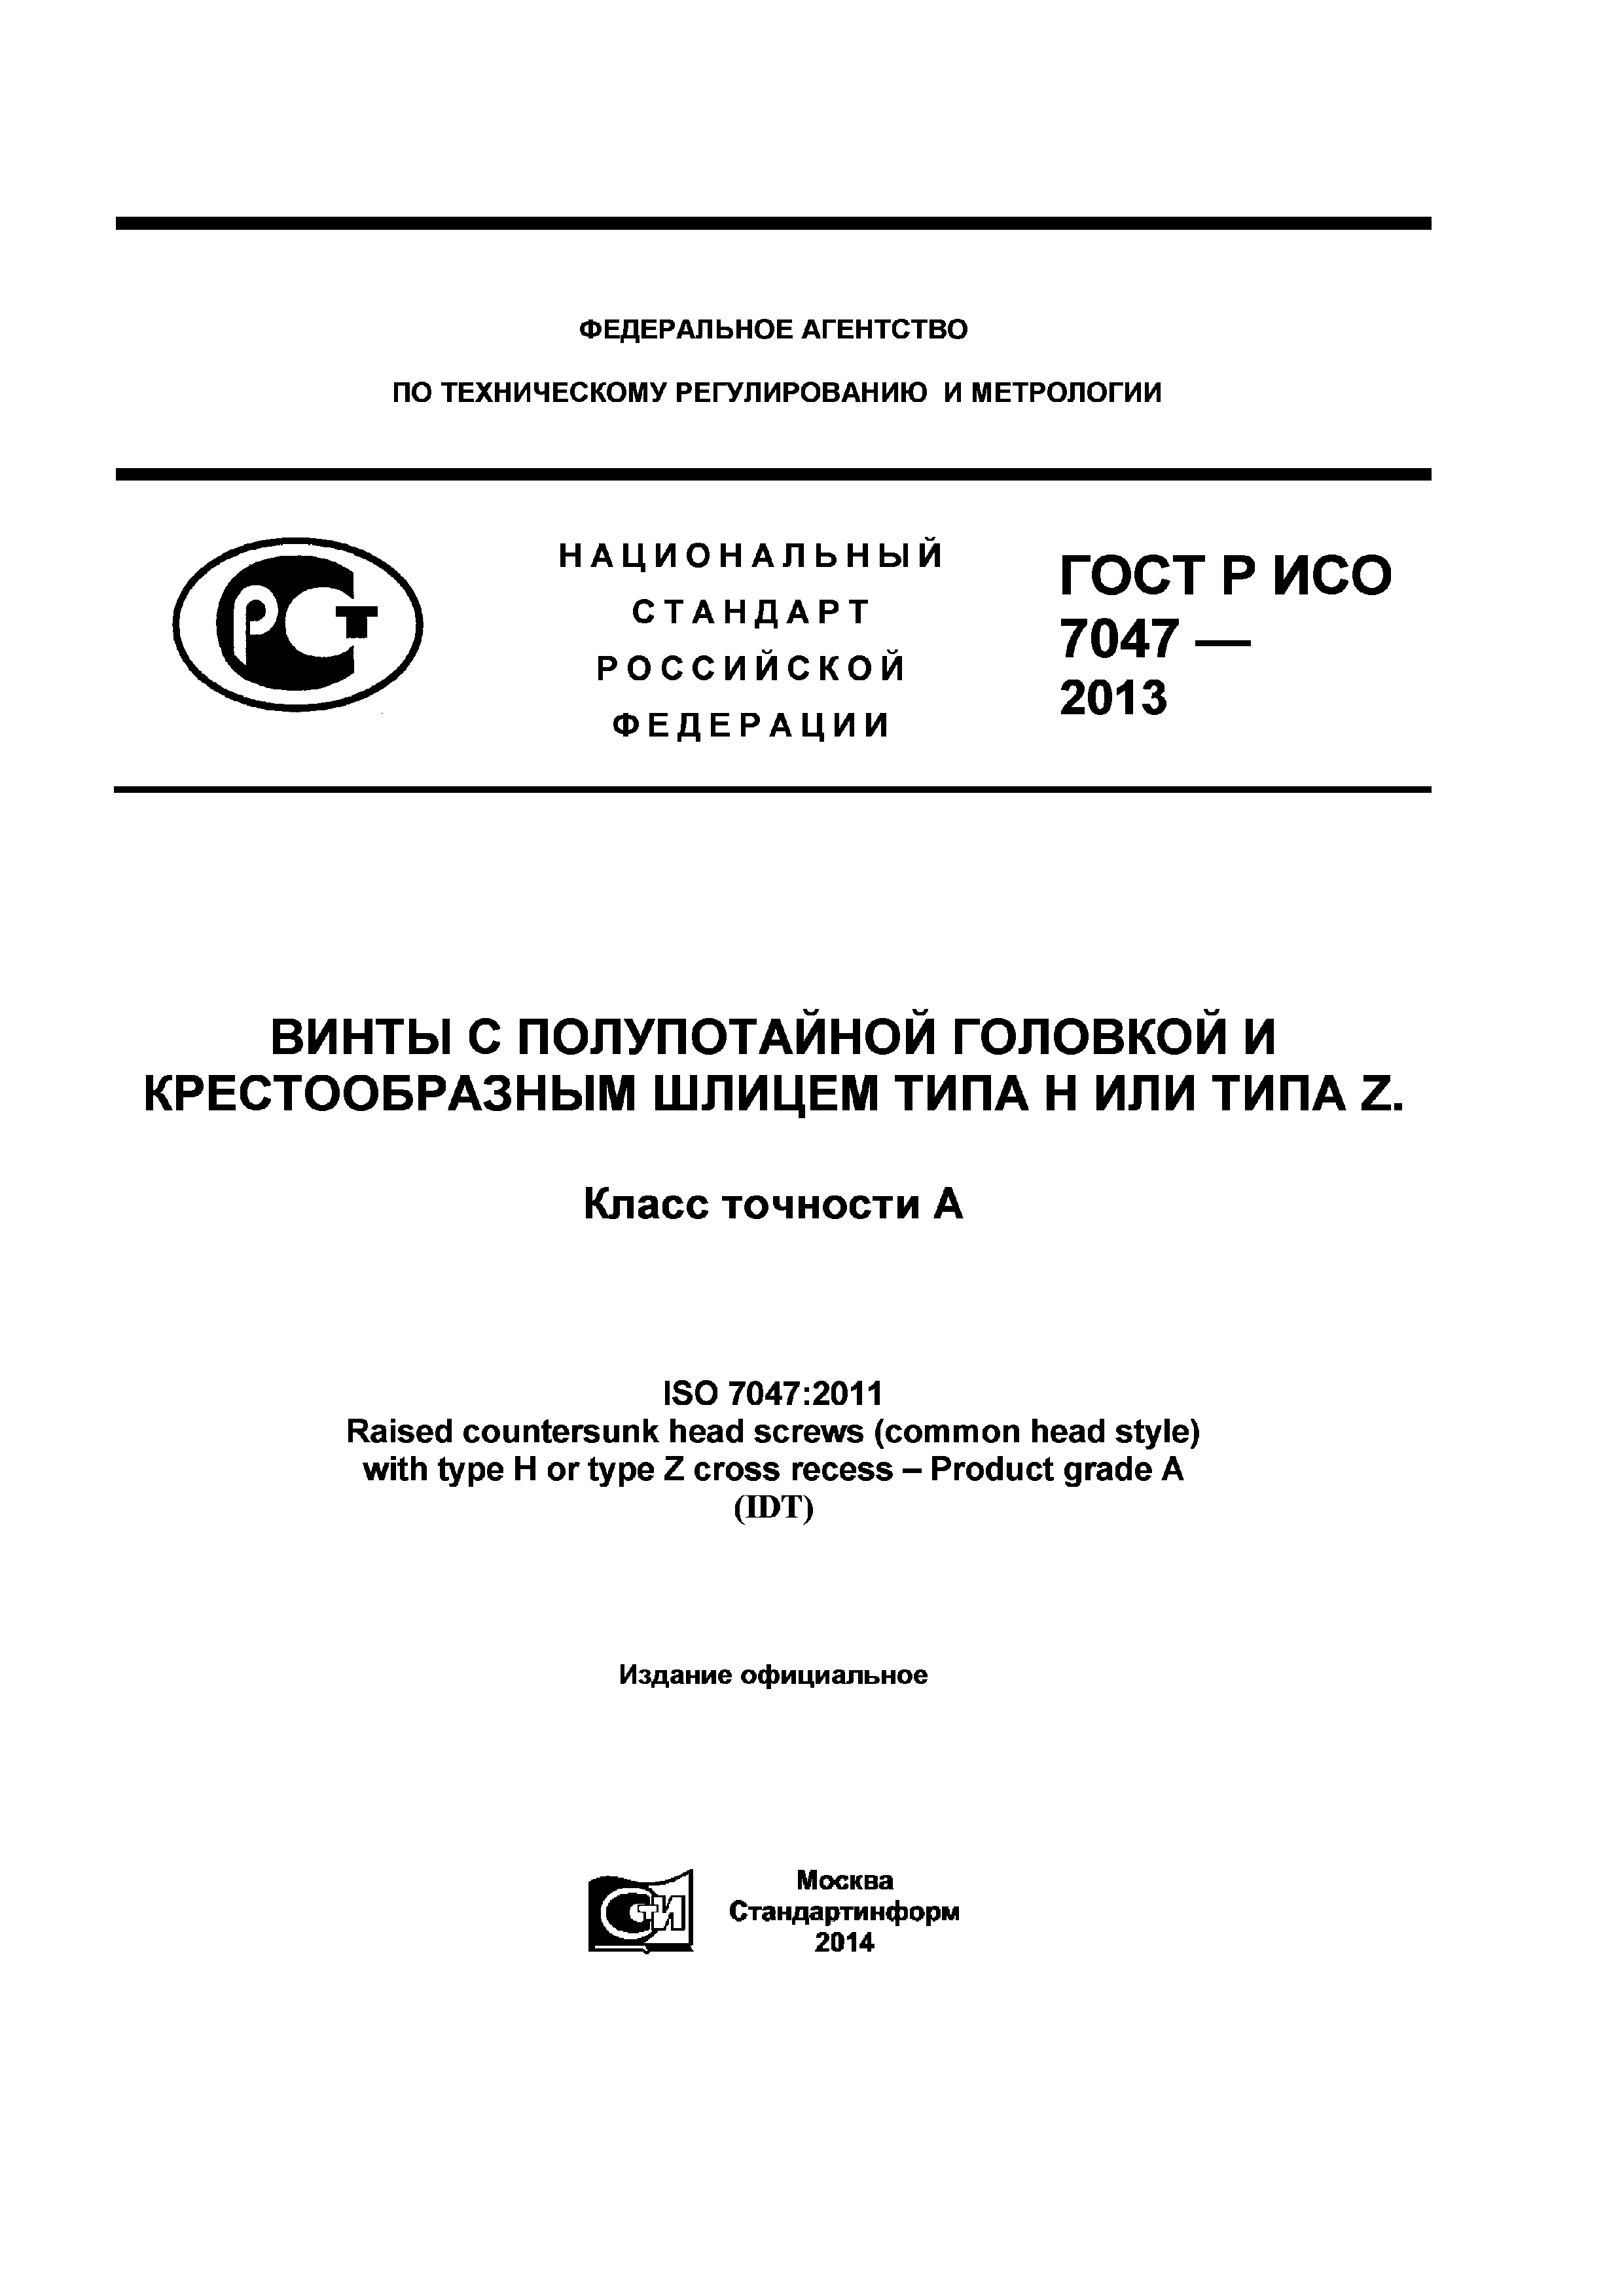 ГОСТ Р ИСО 7047-2013